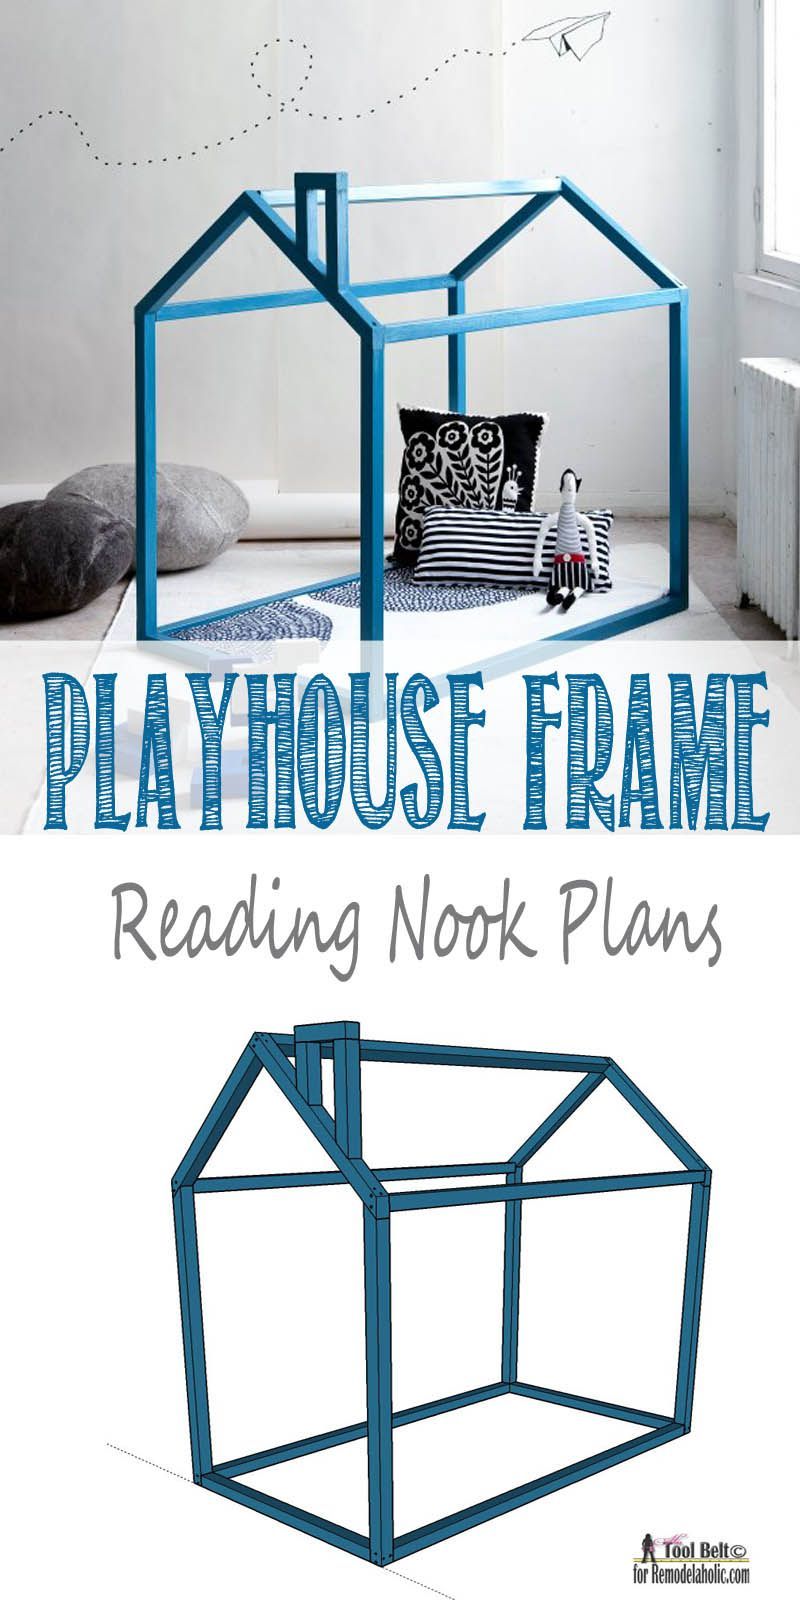 Remodelaholic | DIY Toddler House Bed Frame / Playhouse Reading Nook - Remodelaholic | DIY Toddler House Bed Frame / Playhouse Reading Nook -   16 diy Bed Frame corner ideas